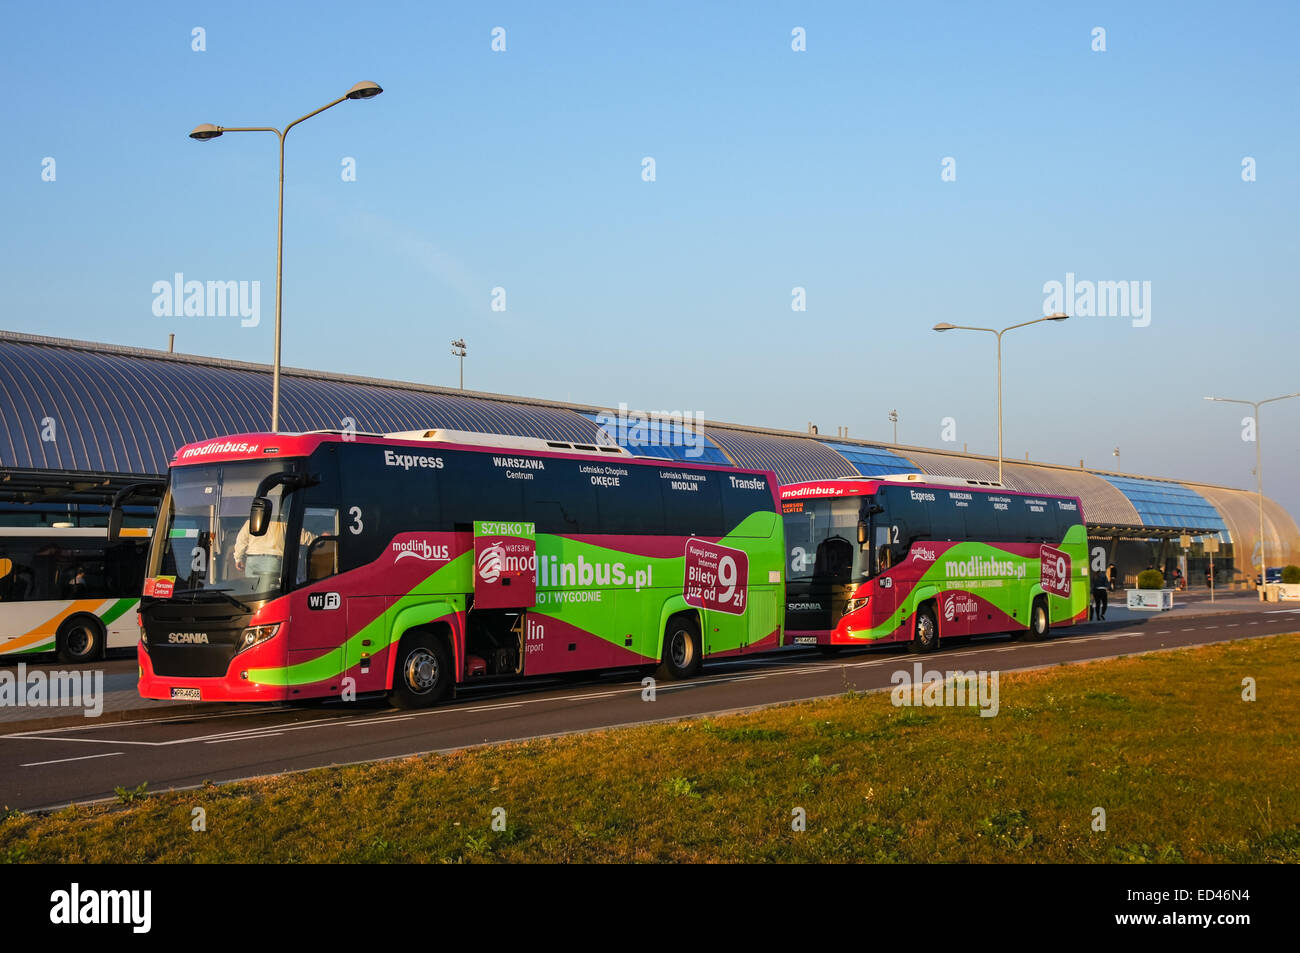 Servicio lanzadera de autobuses en frente del aeropuerto Modlin Varsovia, Polonia Foto de stock